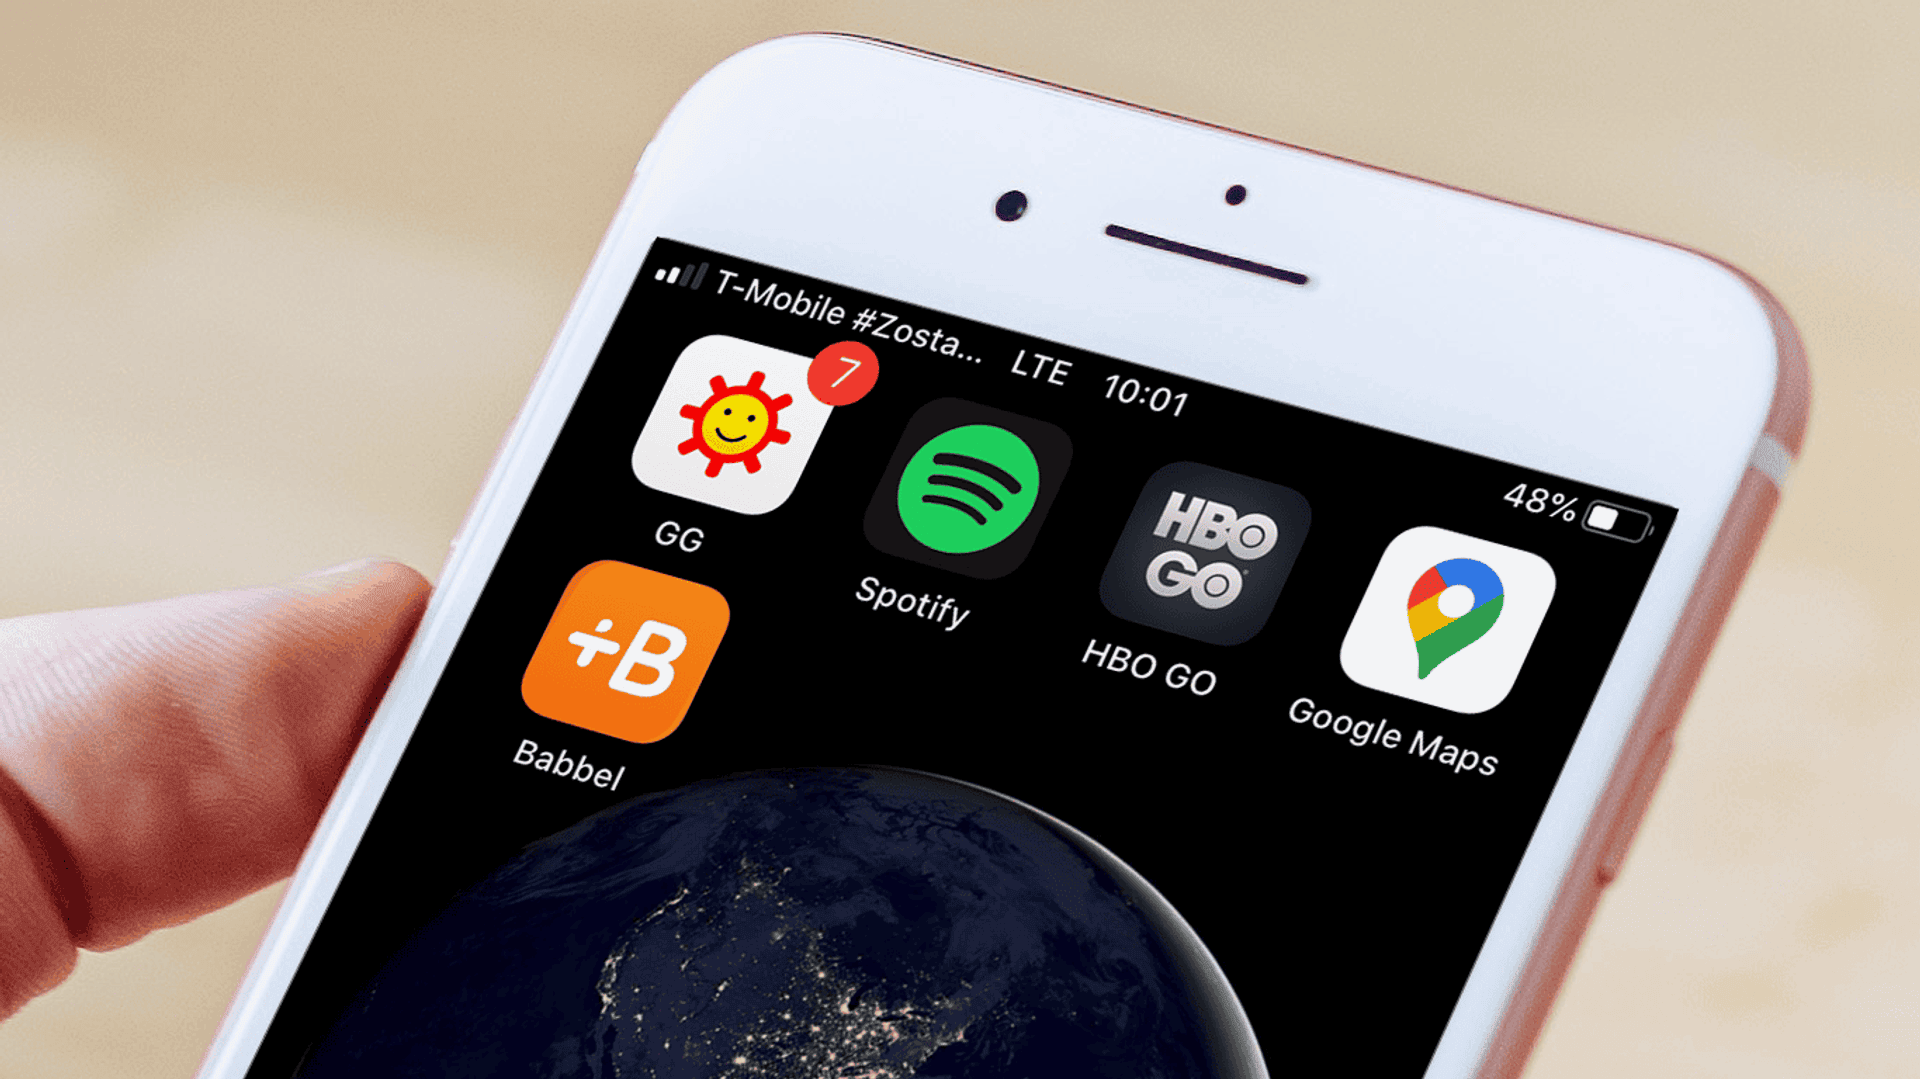 telefon komórkowy z wyświetlonymi na ekranie ikonami GG, Spotify